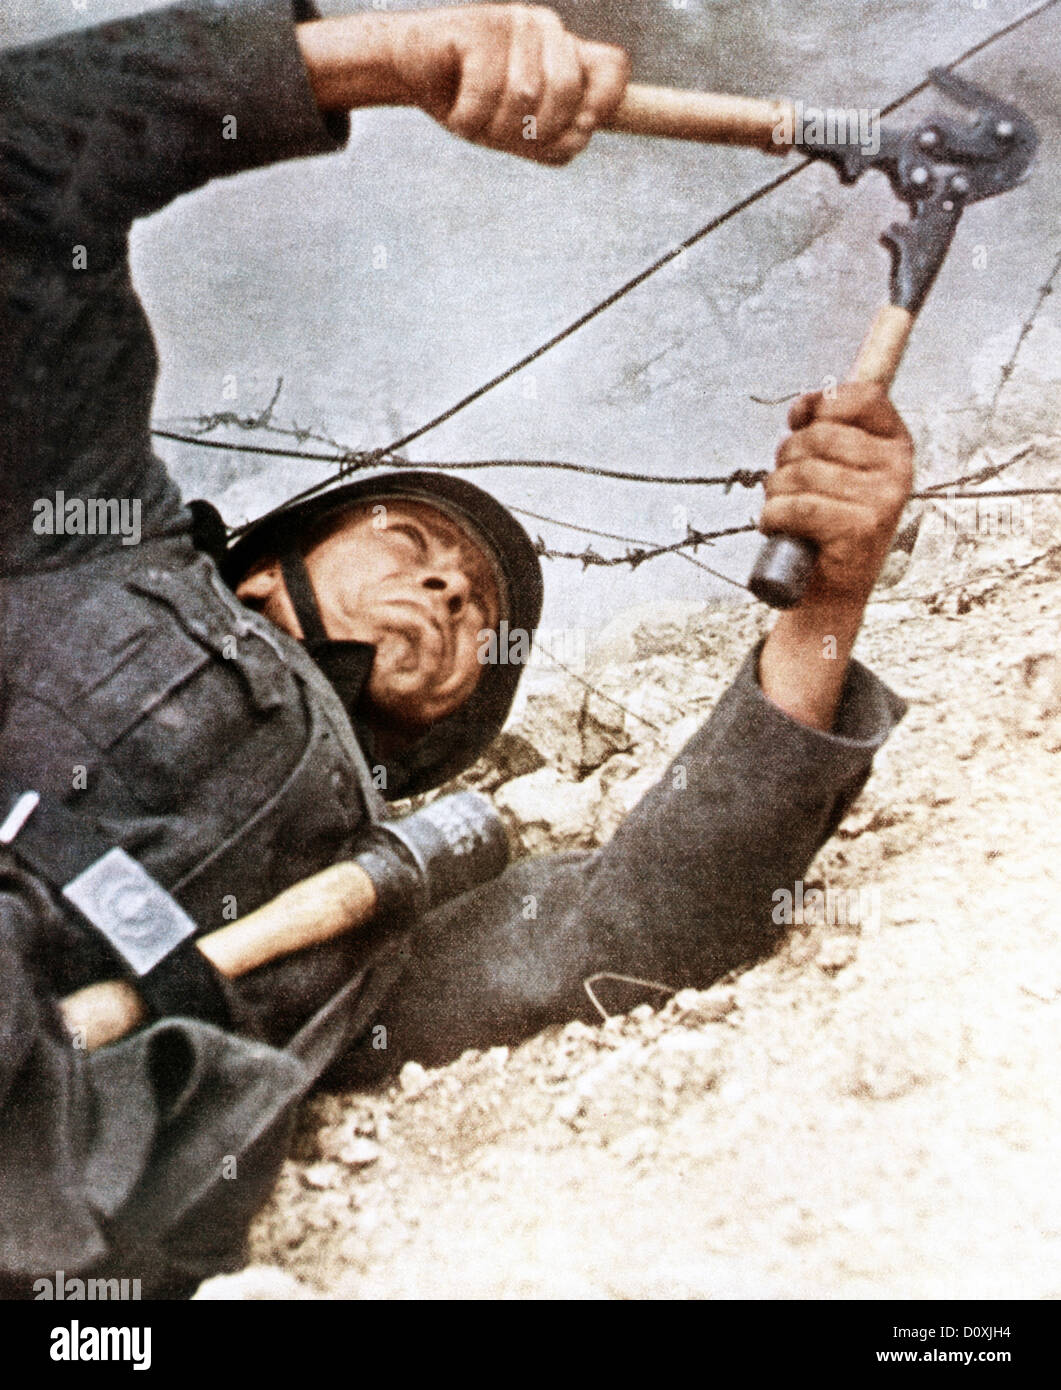 Operation, Barbarossa, Wehrmacht, soldier, cutting, barbed wire, invasion, USSR, World War II, 1942 grenade, Stock Photo